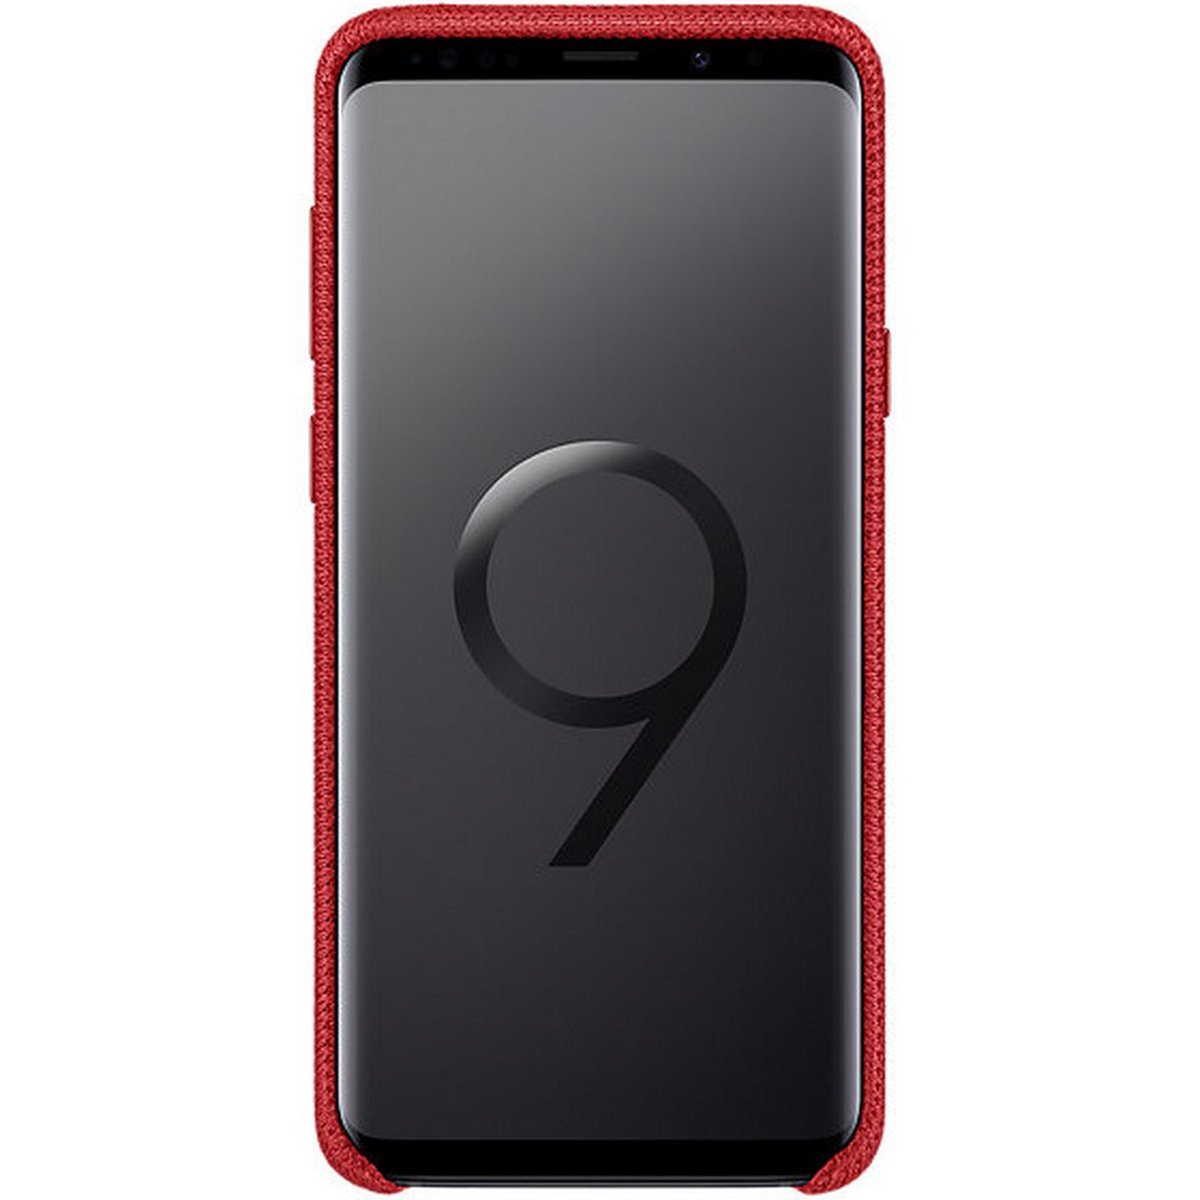 Samsung Galaxy S9+ Hyperknit Cover Red EF-GG965FREGWW